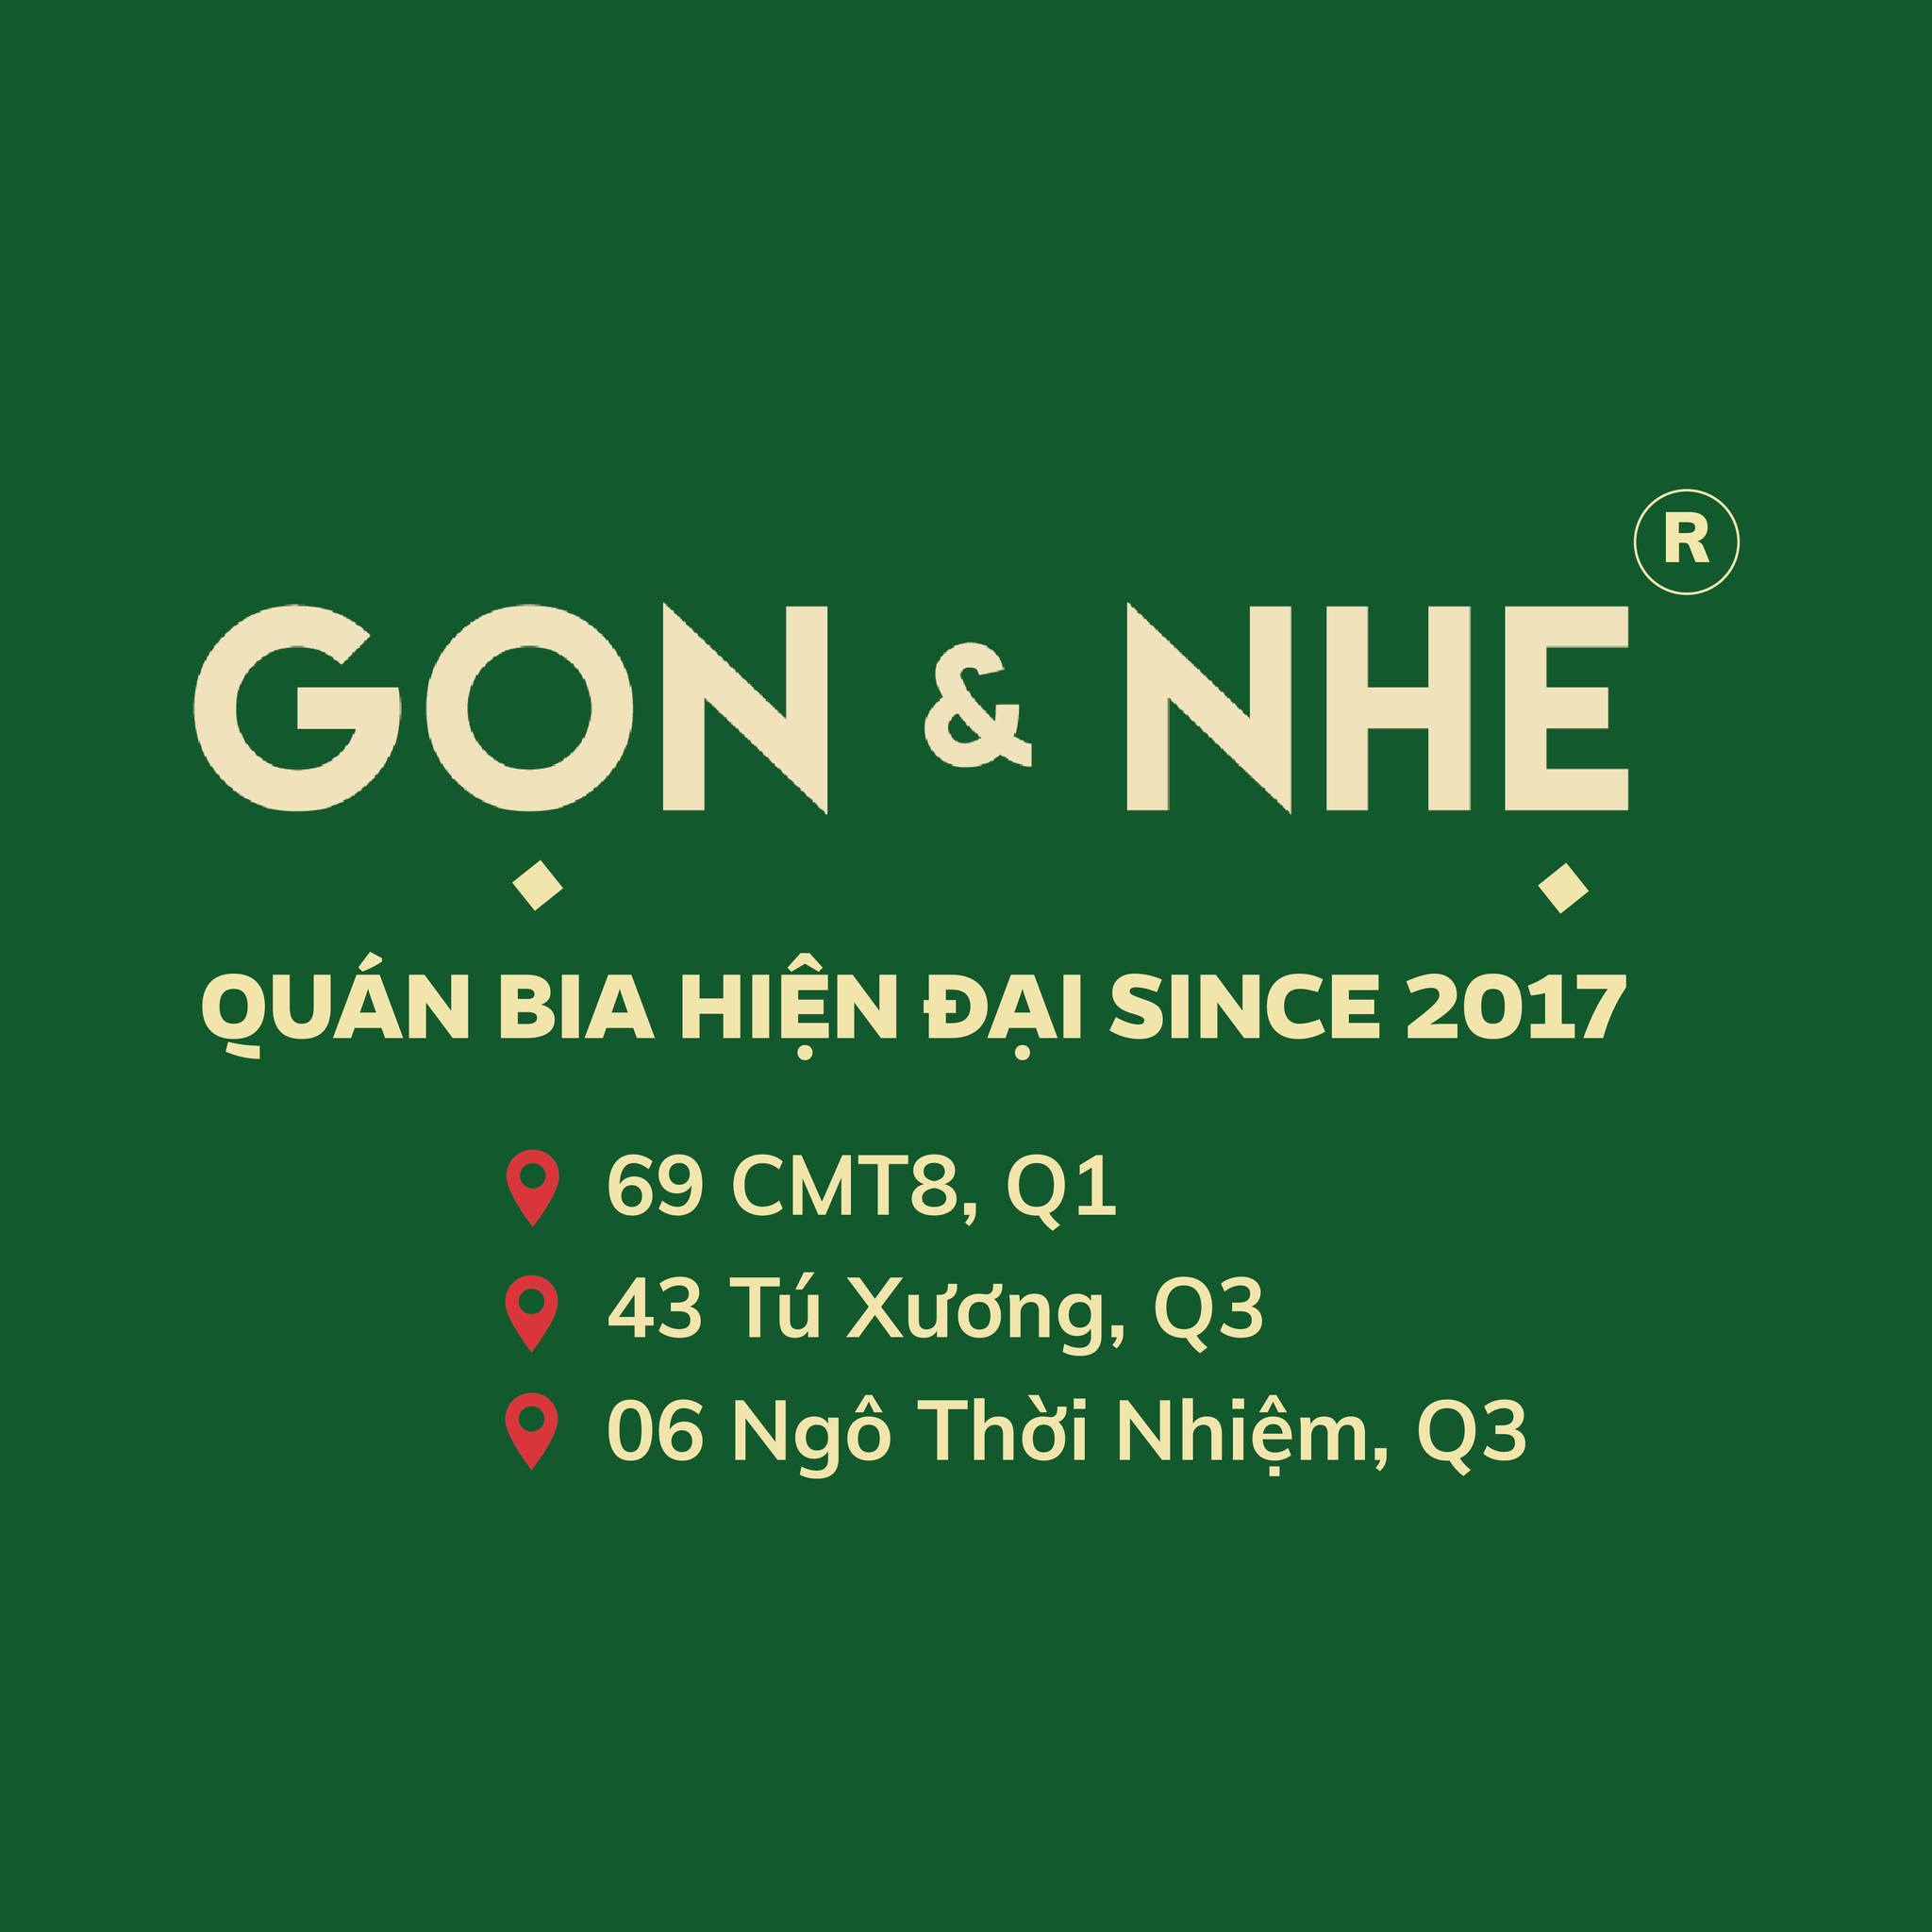 Top 40 danh sách các món ngon ngày Tết Việt Nam 3 miền (phần 3)